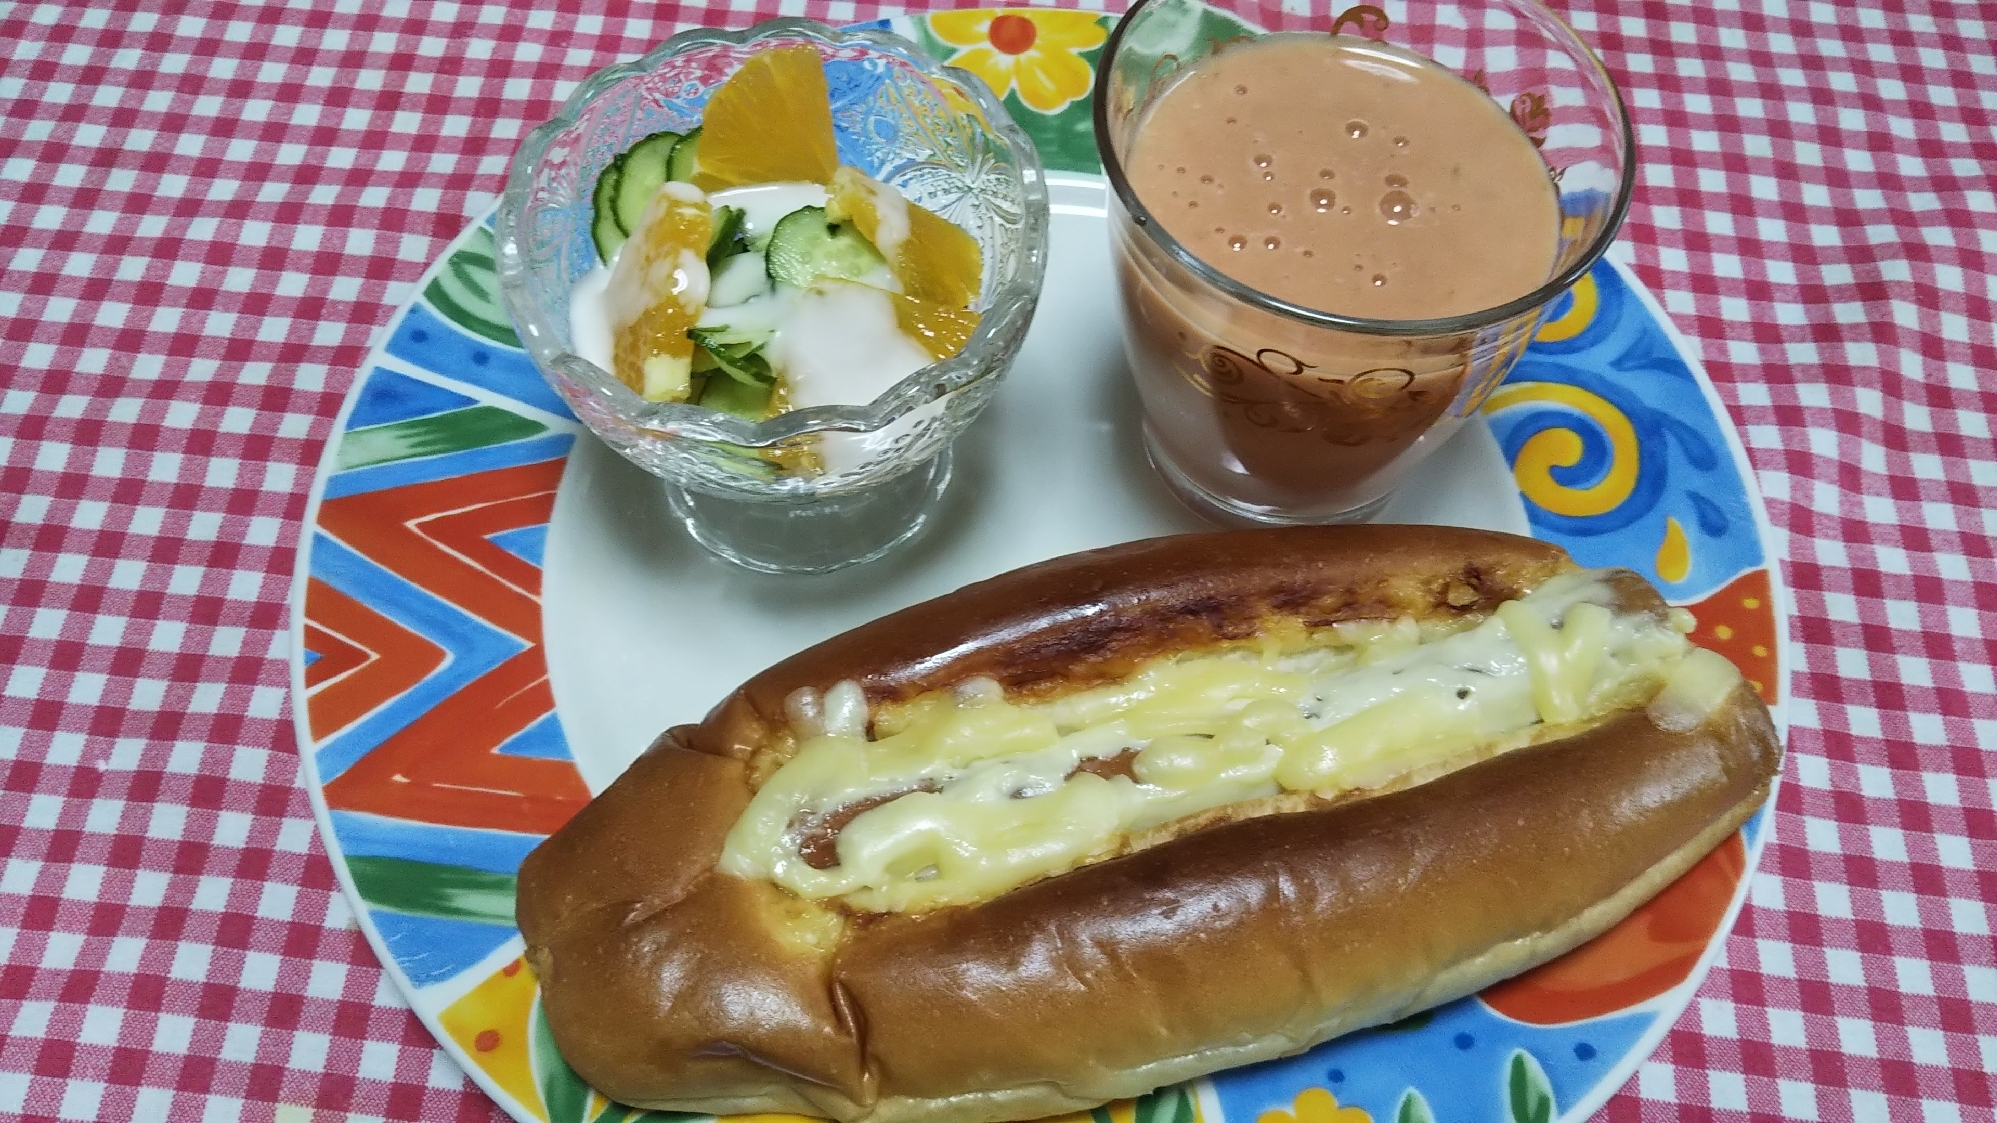 惣菜パンのチーズトーストとスムージーとサラダ☆